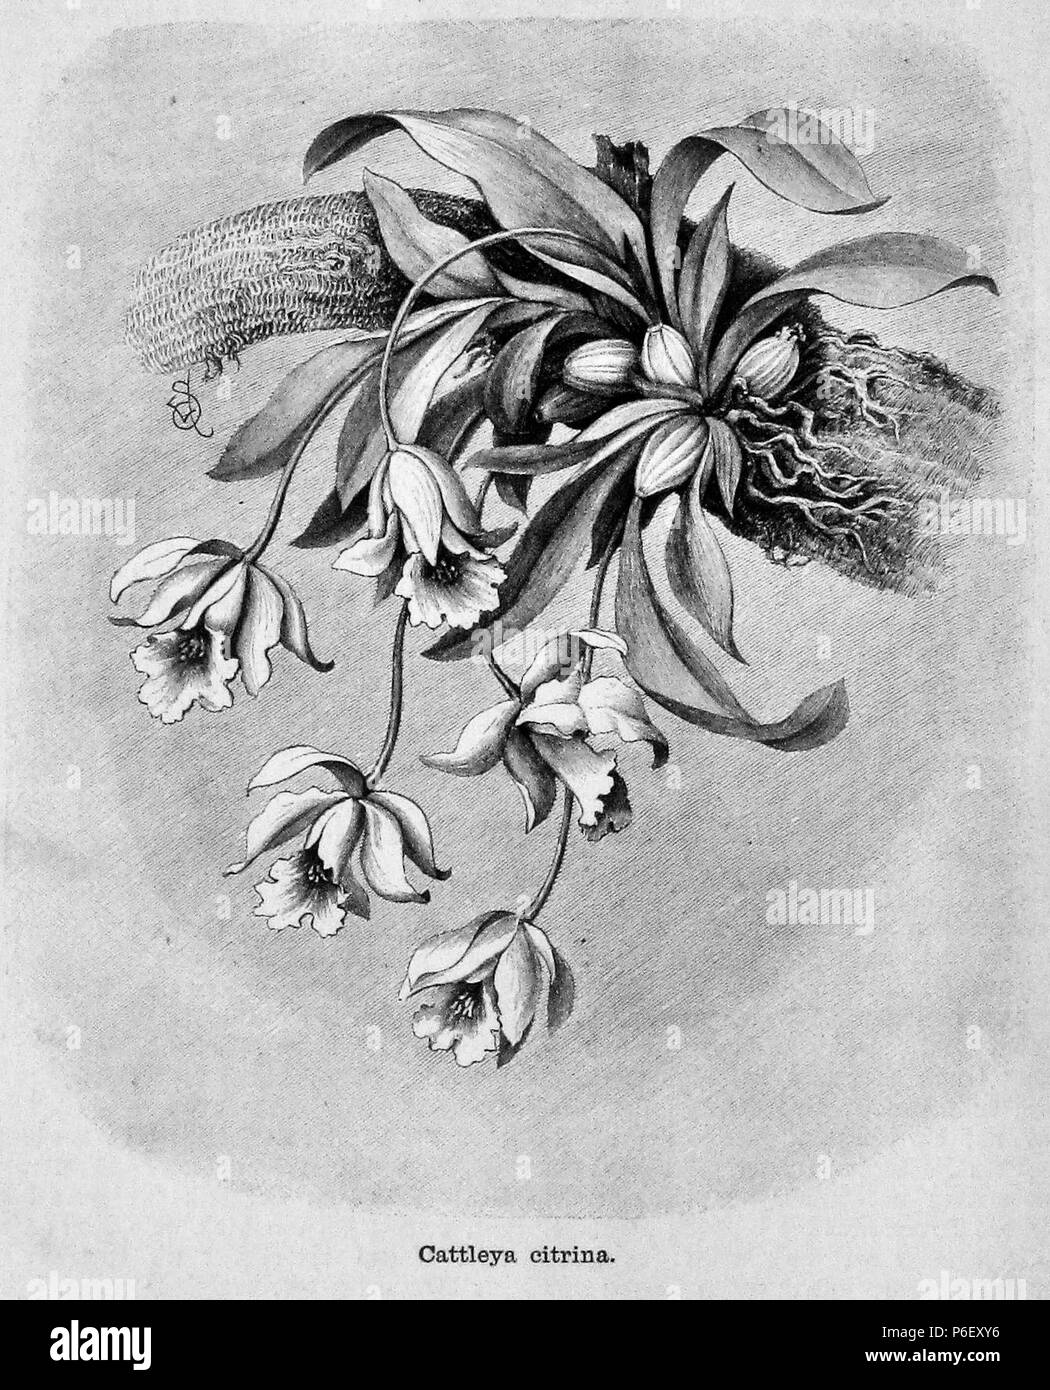 . Die Gartenlaube. Expression error: Unexpected > operator. Deutsch: Bildunterschrift: „Cattleya citrina“ English: caption: 'Cattleya citrina' . N/A 18 Die Gartenlaube (1891) b 172 Stock Photo